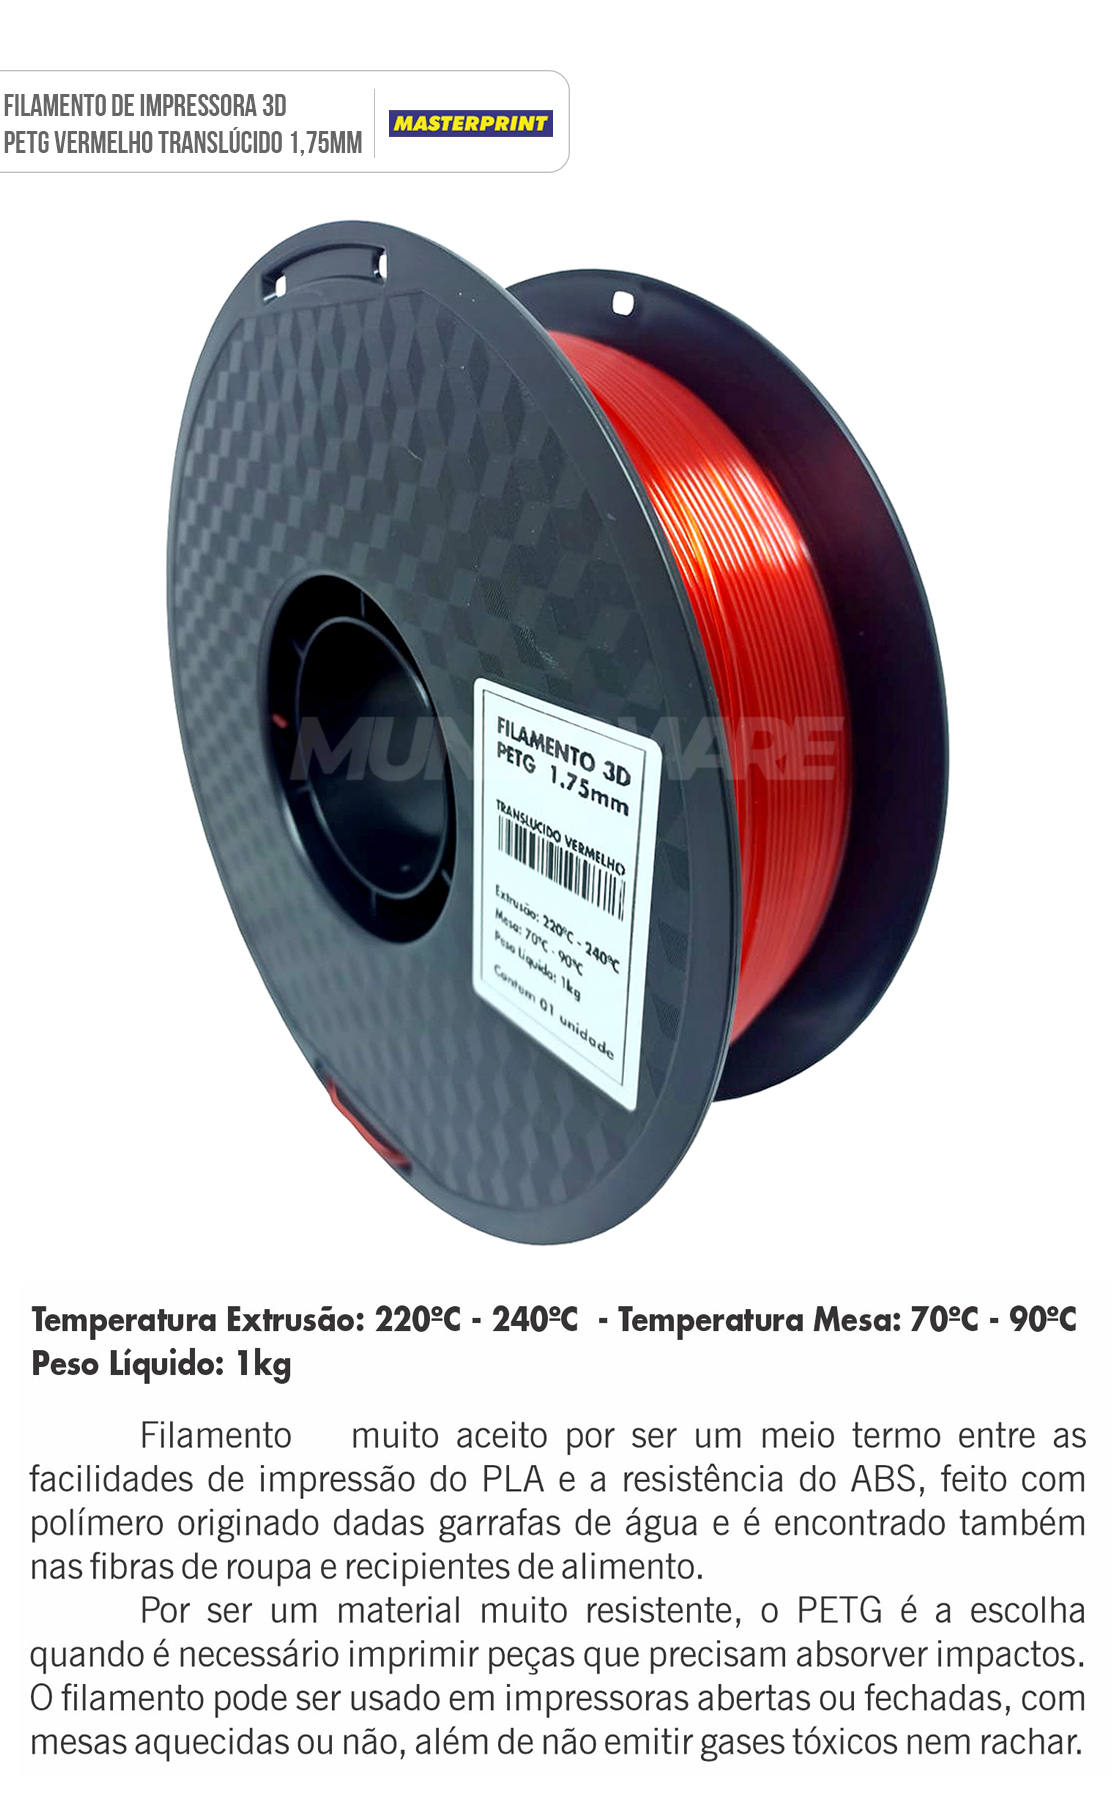 Filamento 3D PETG Vermelho Translcido 1.75mm 1KG para Impressora 3D Alta Resistncia Bom Acabamento Masterprint